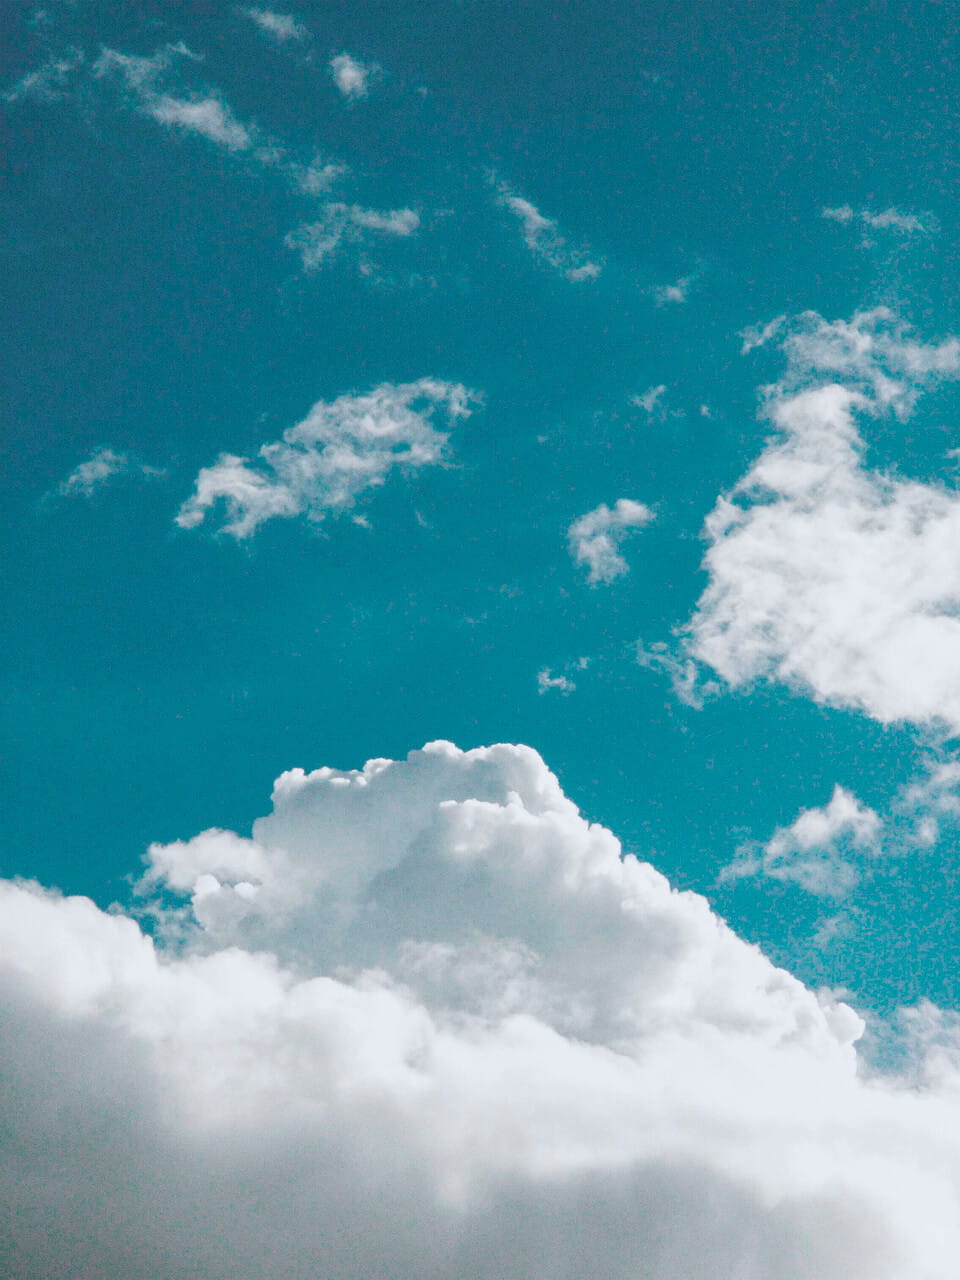 Lebhafter blauer Himmel mit sanften weißen Wolken, die Ruhe und natürliche Schönheit vermitteln.